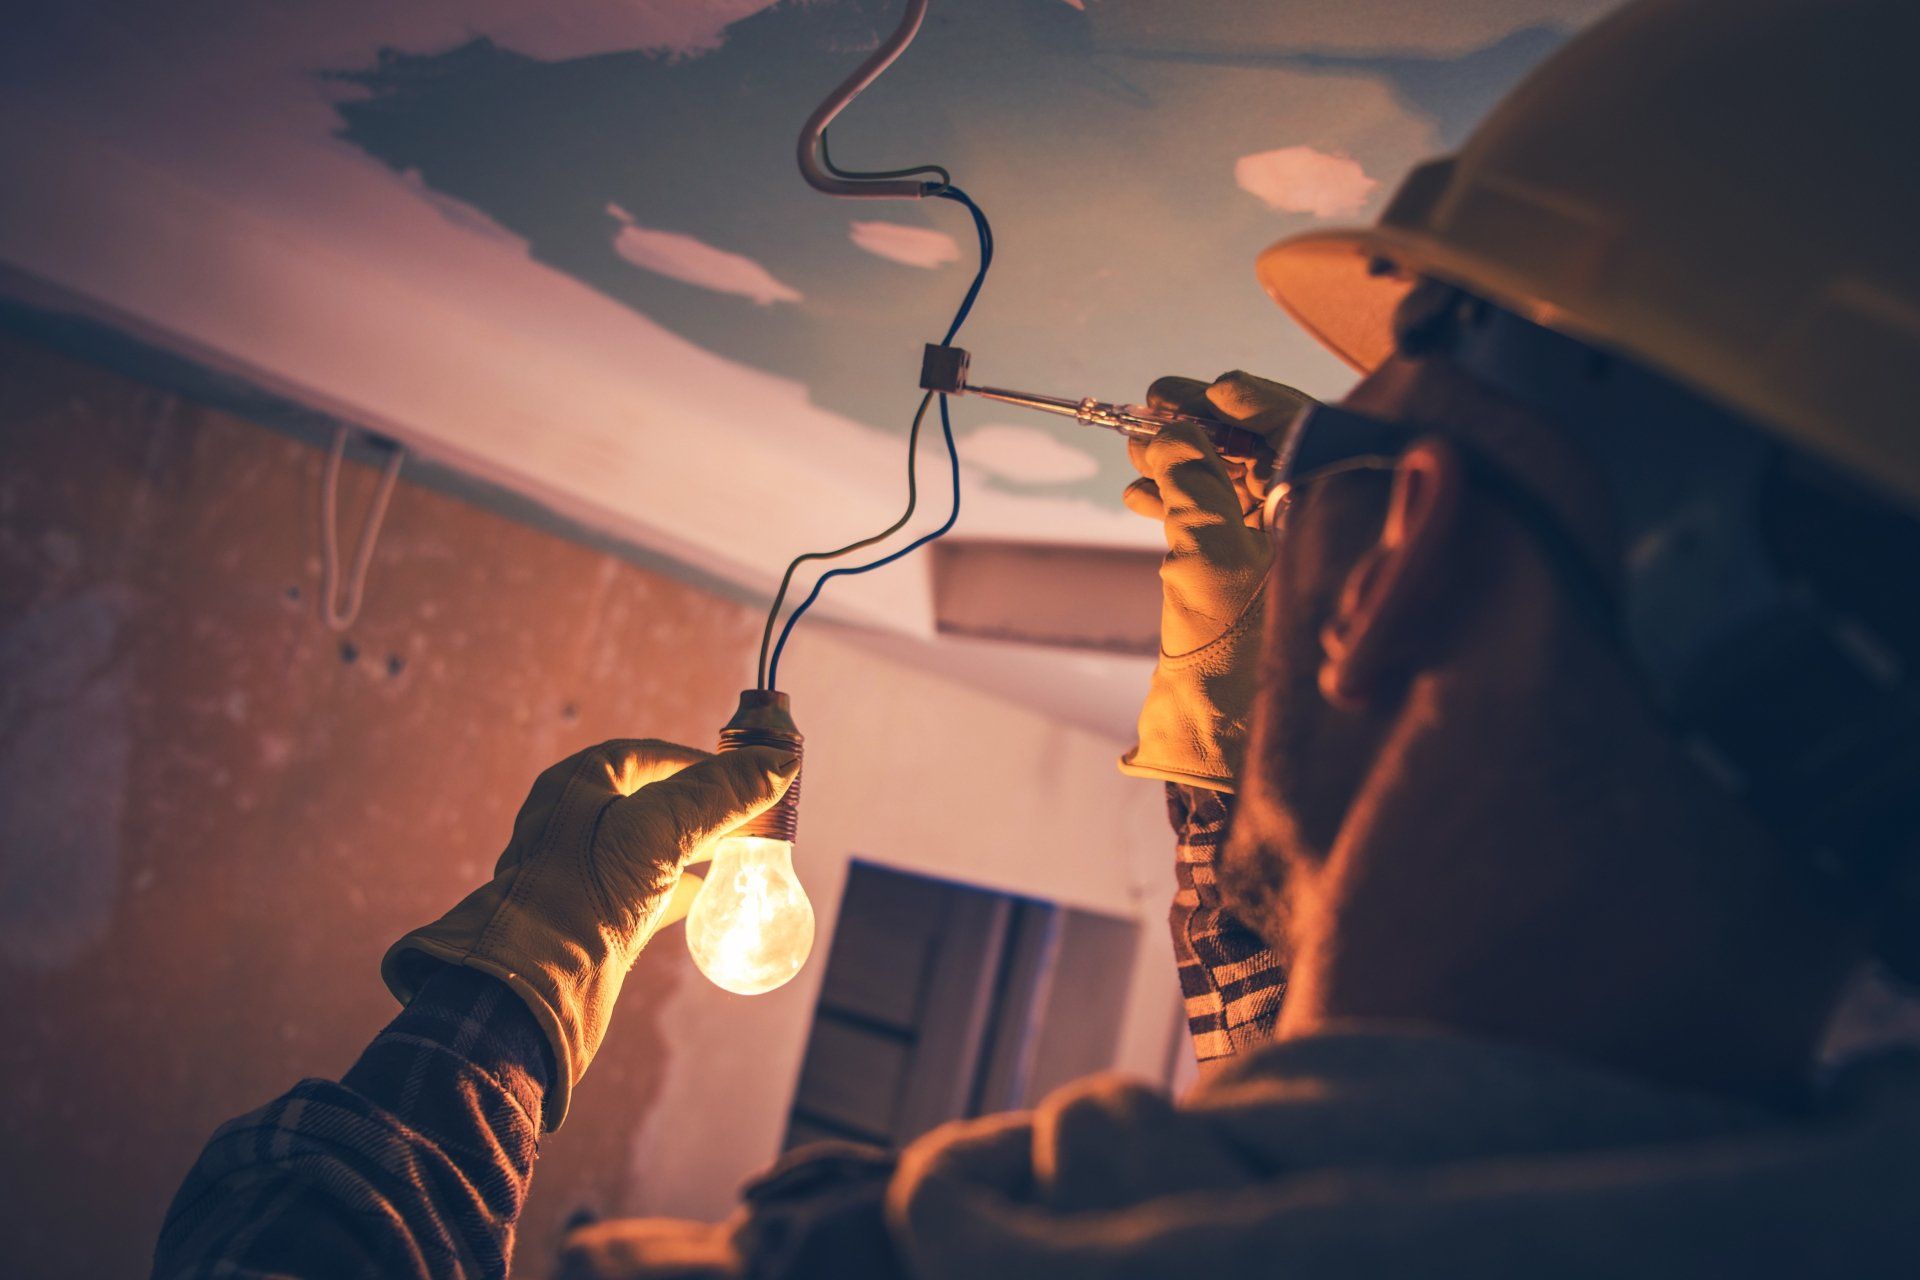 Un homme tient une ampoule à la main alors qu’il travaille au plafond.